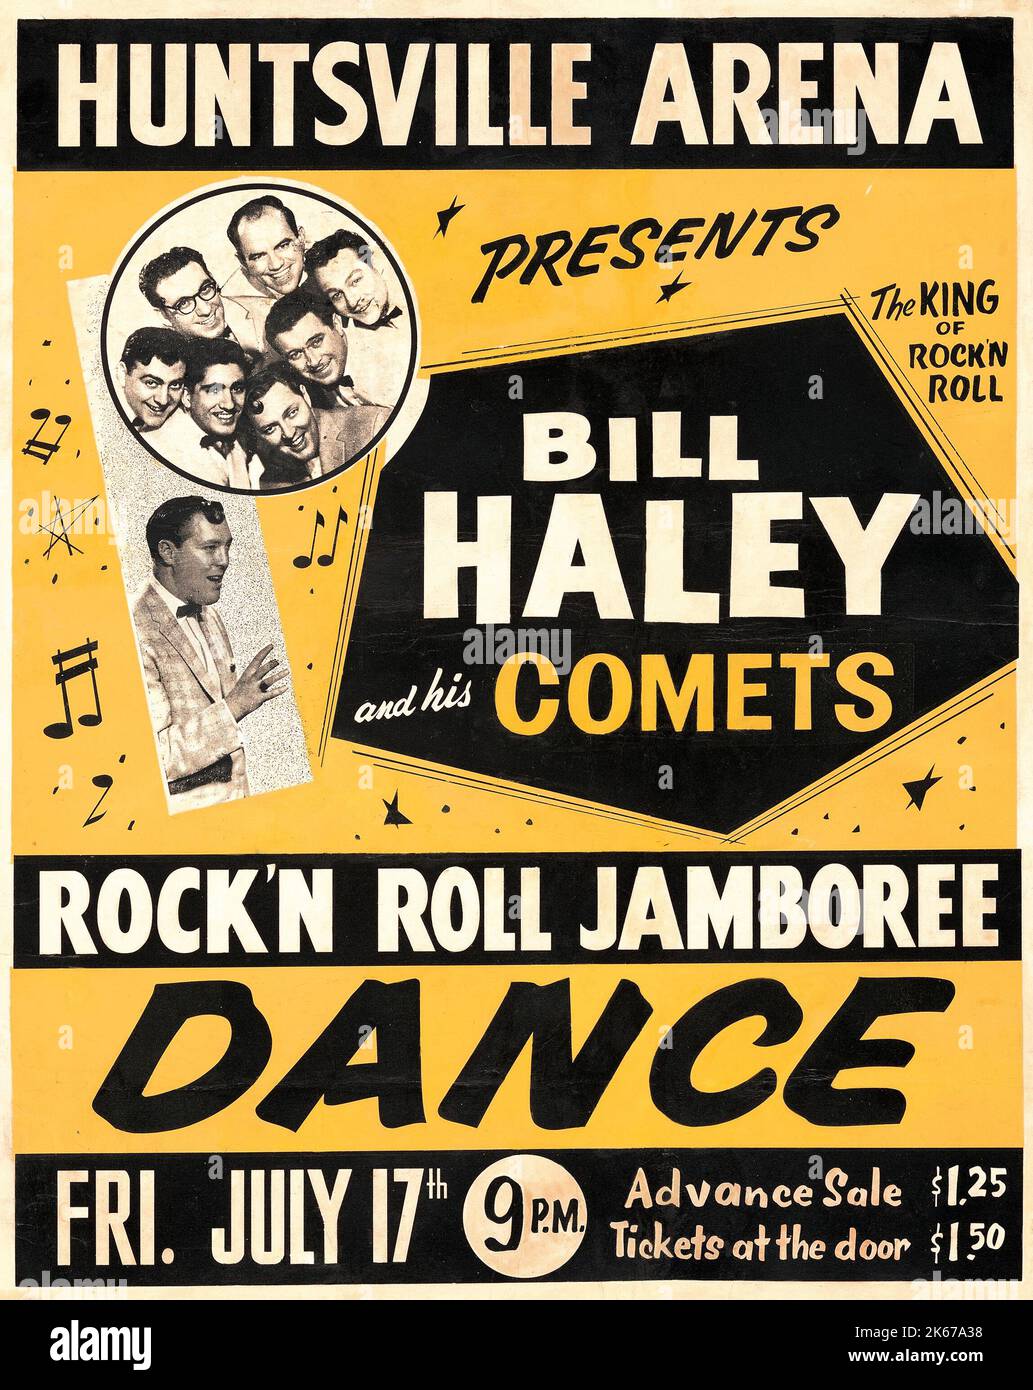 Bill Haley & His Comets 1959 Rock & Roll Jamboree - Dance - Jumbo Concert Poster - Huntsville Arena Stock Photo